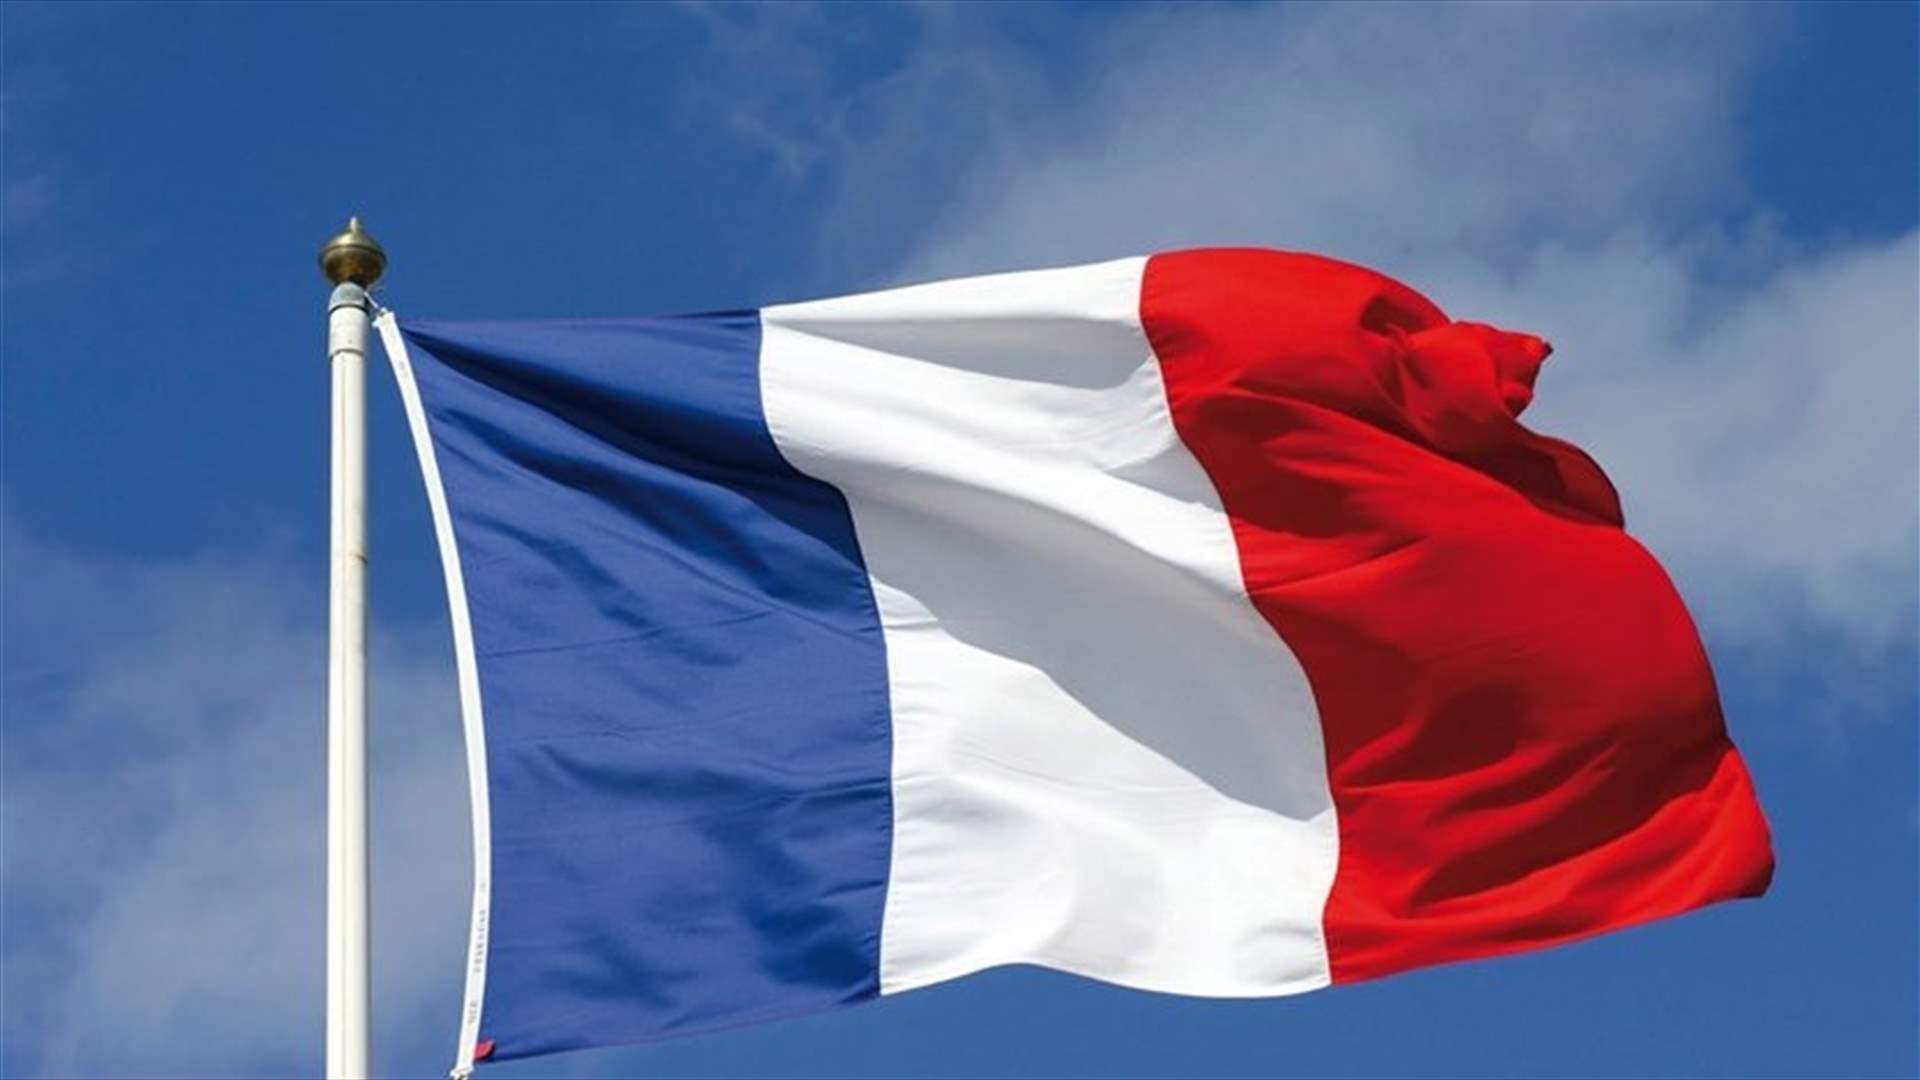 المعارضة الفرنسية تسحب مشروع قانون يلغي رفع سنّ التقاعد